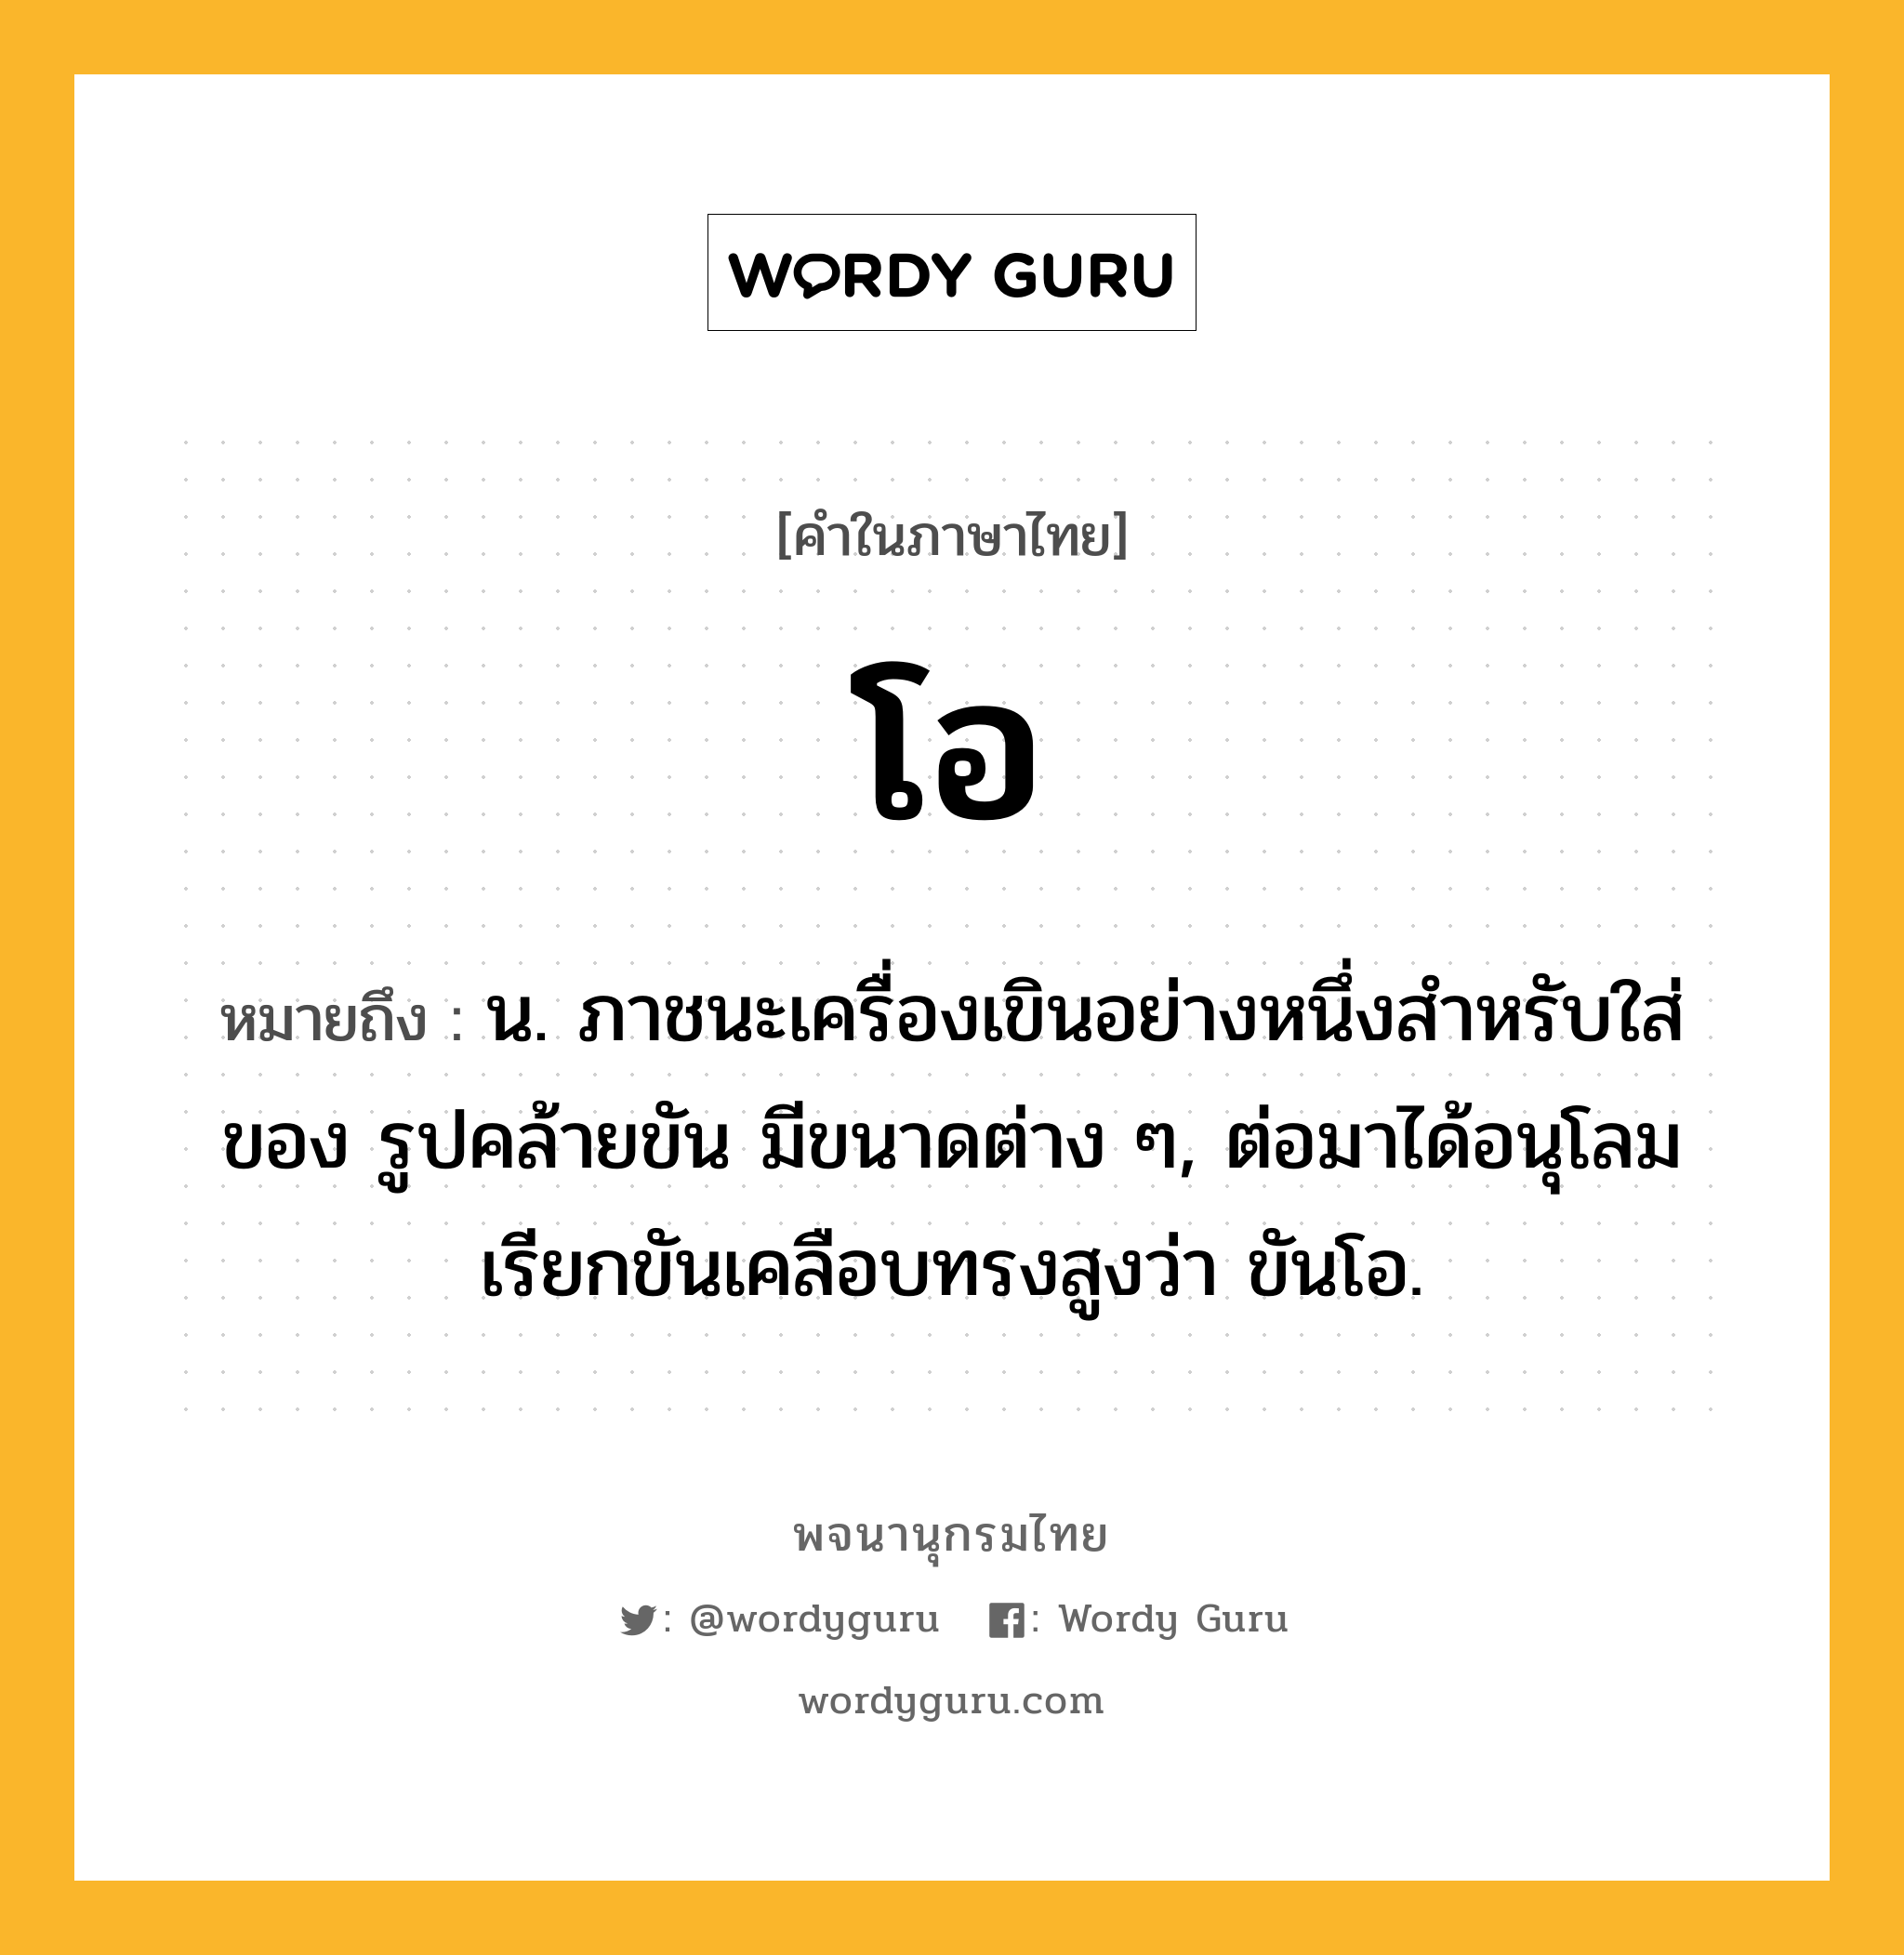 โอ ความหมาย หมายถึงอะไร?, คำในภาษาไทย โอ หมายถึง น. ภาชนะเครื่องเขินอย่างหนึ่งสําหรับใส่ของ รูปคล้ายขัน มีขนาดต่าง ๆ, ต่อมาได้อนุโลมเรียกขันเคลือบทรงสูงว่า ขันโอ.